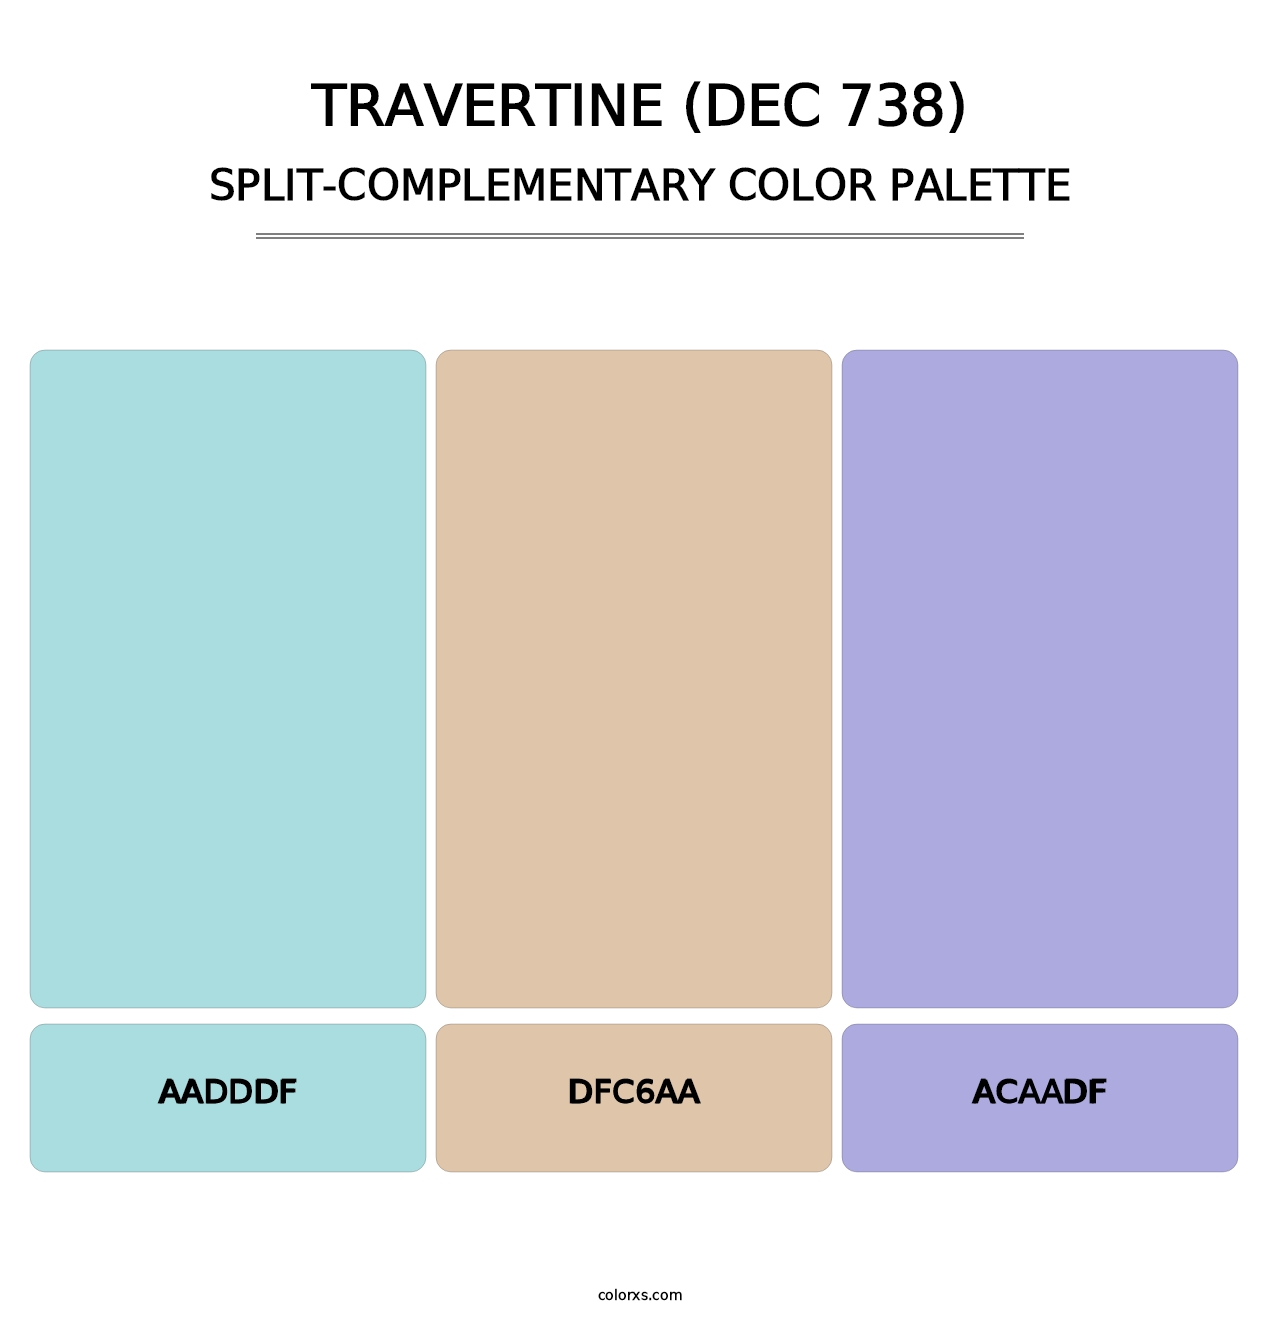 Travertine (DEC 738) - Split-Complementary Color Palette